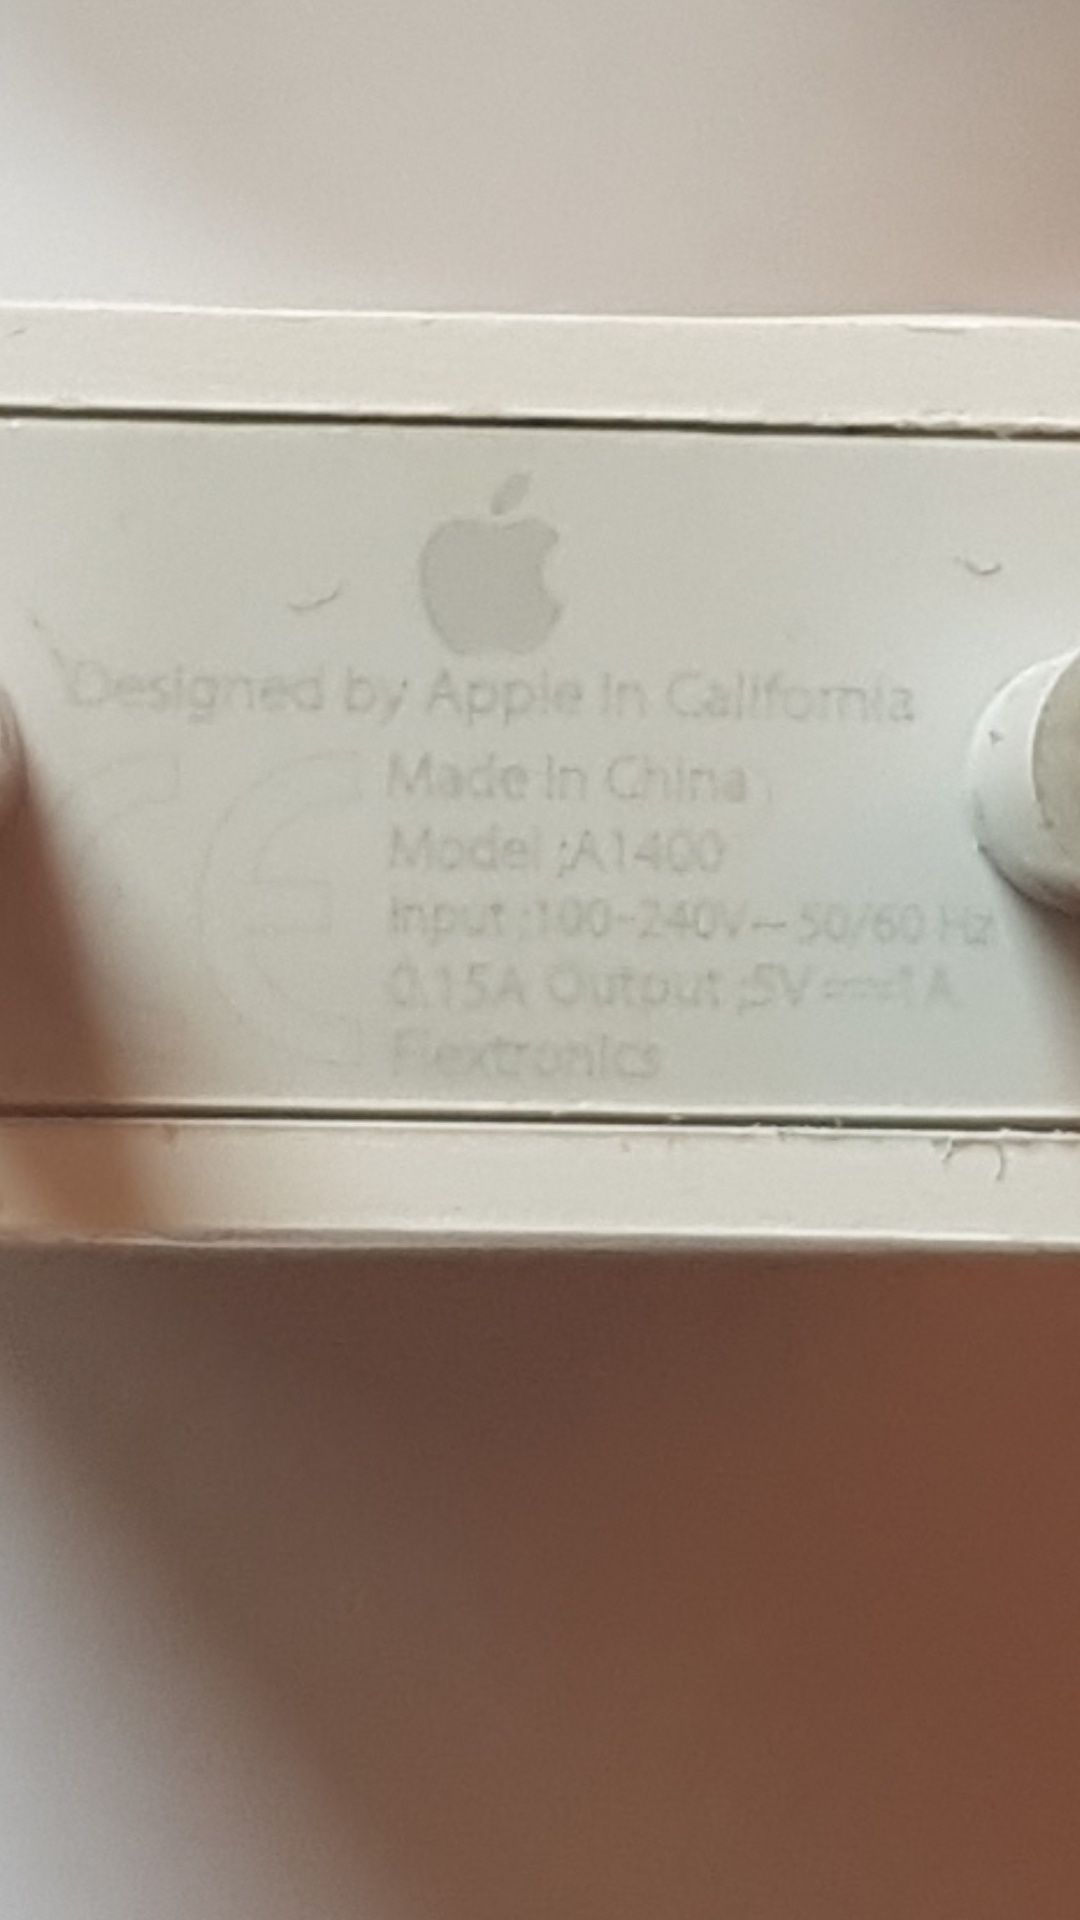 Încărcător original iPhone și Cablu încărcare USB Type C / Lightning